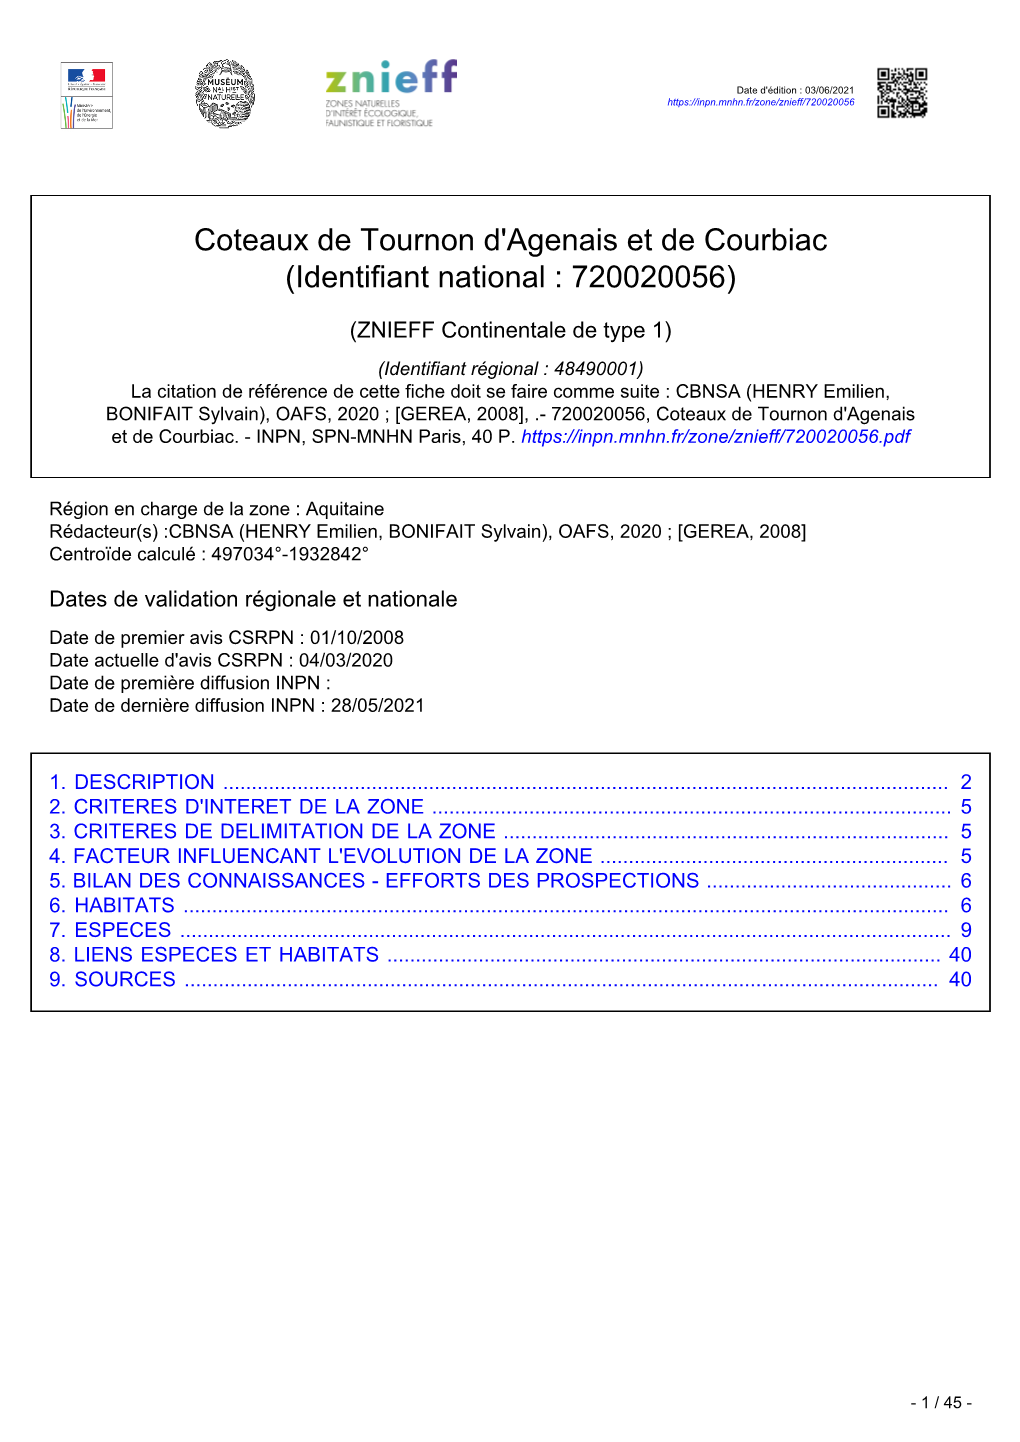 Coteaux De Tournon D'agenais Et De Courbiac (Identifiant National : 720020056)